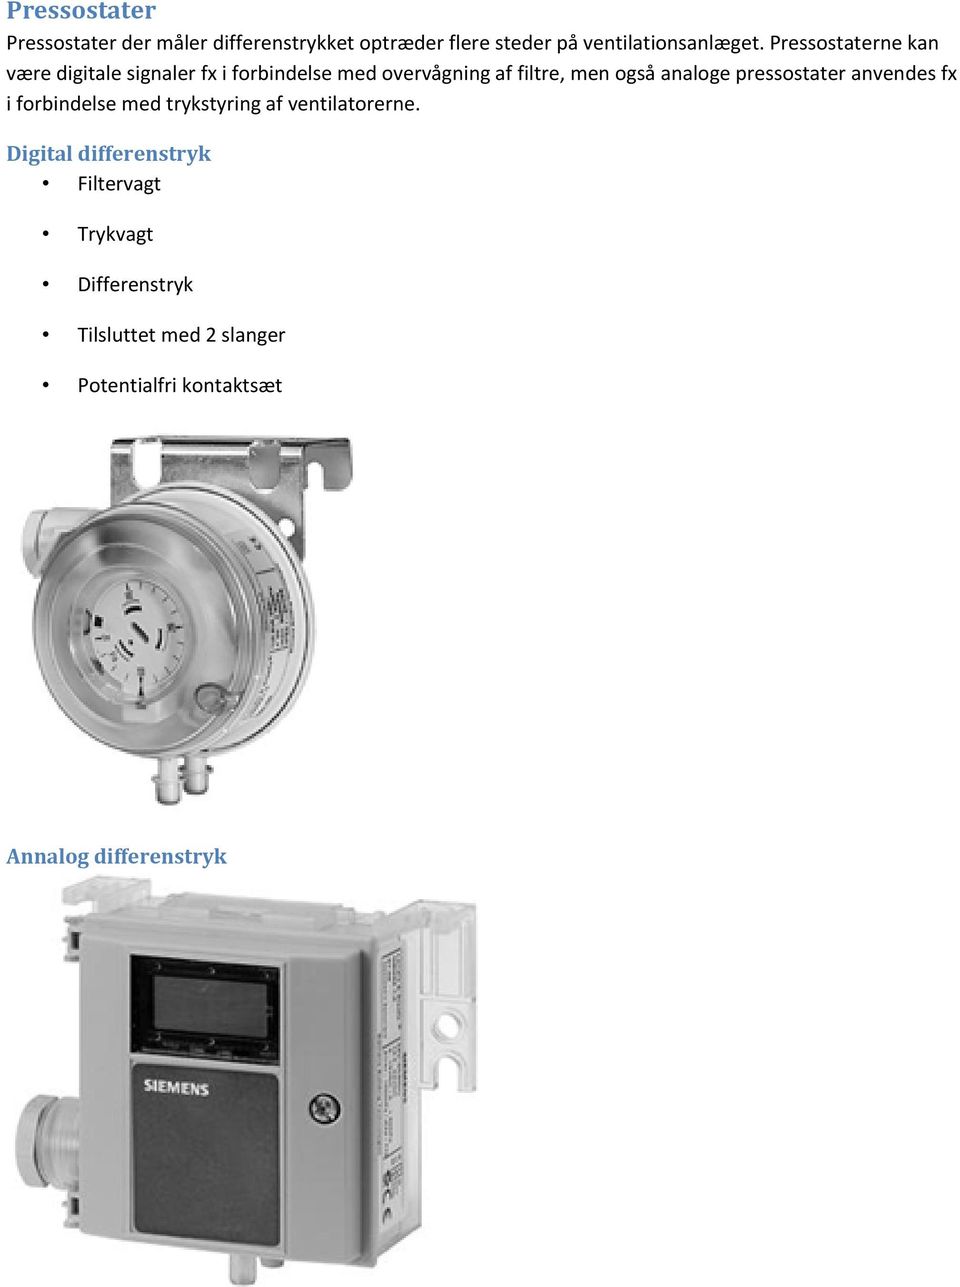 analoge pressostater anvendes fx i forbindelse med trykstyring af ventilatorerne.